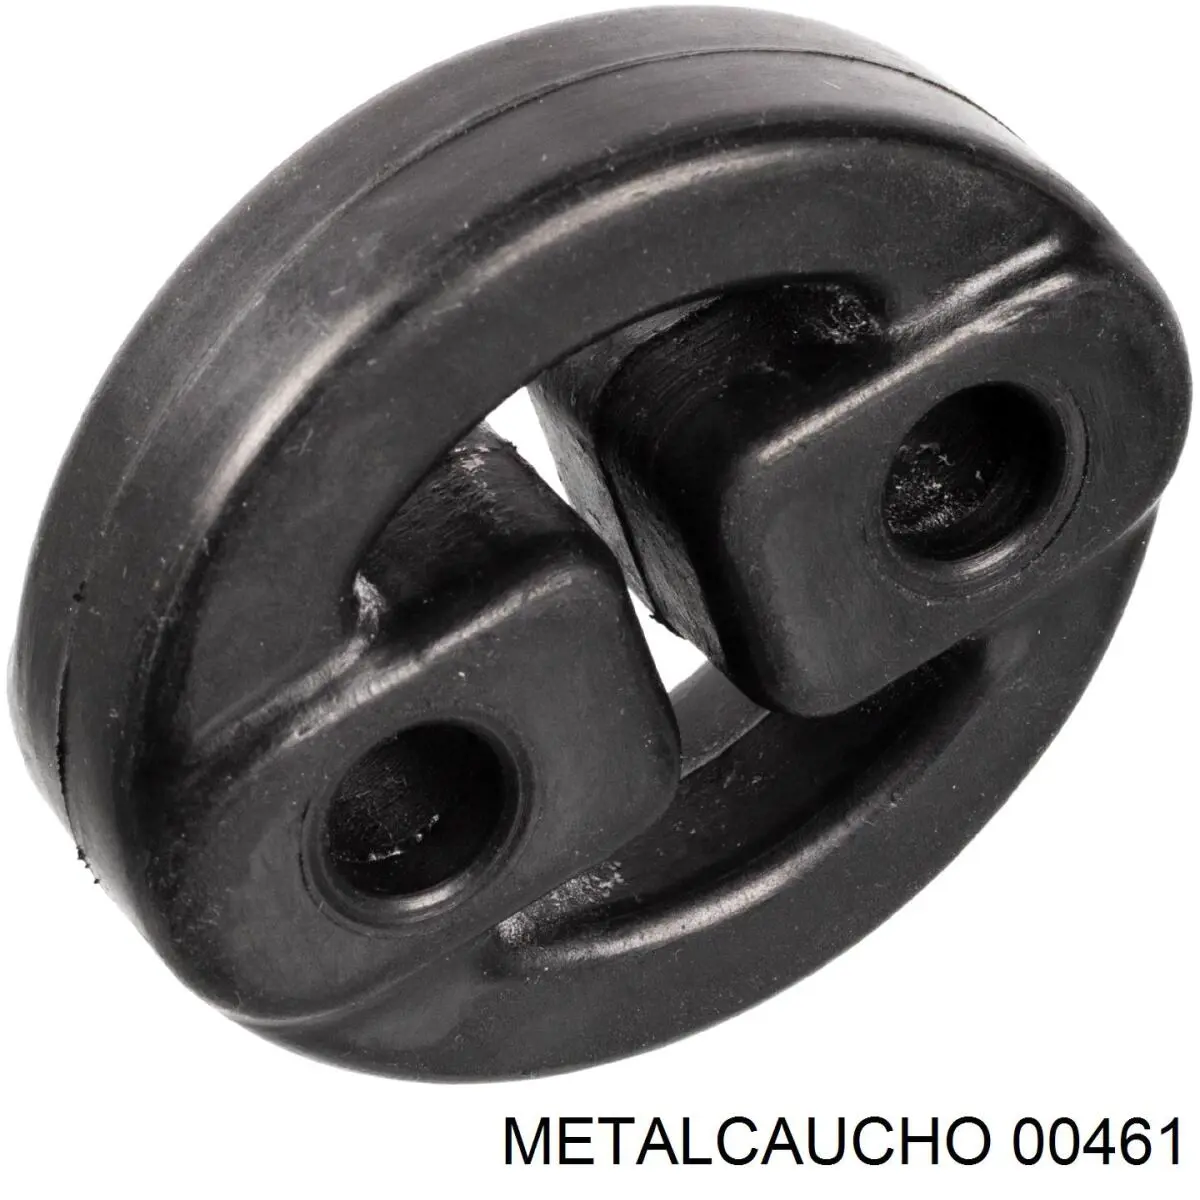 00461 Metalcaucho silentblock de suspensión delantero inferior